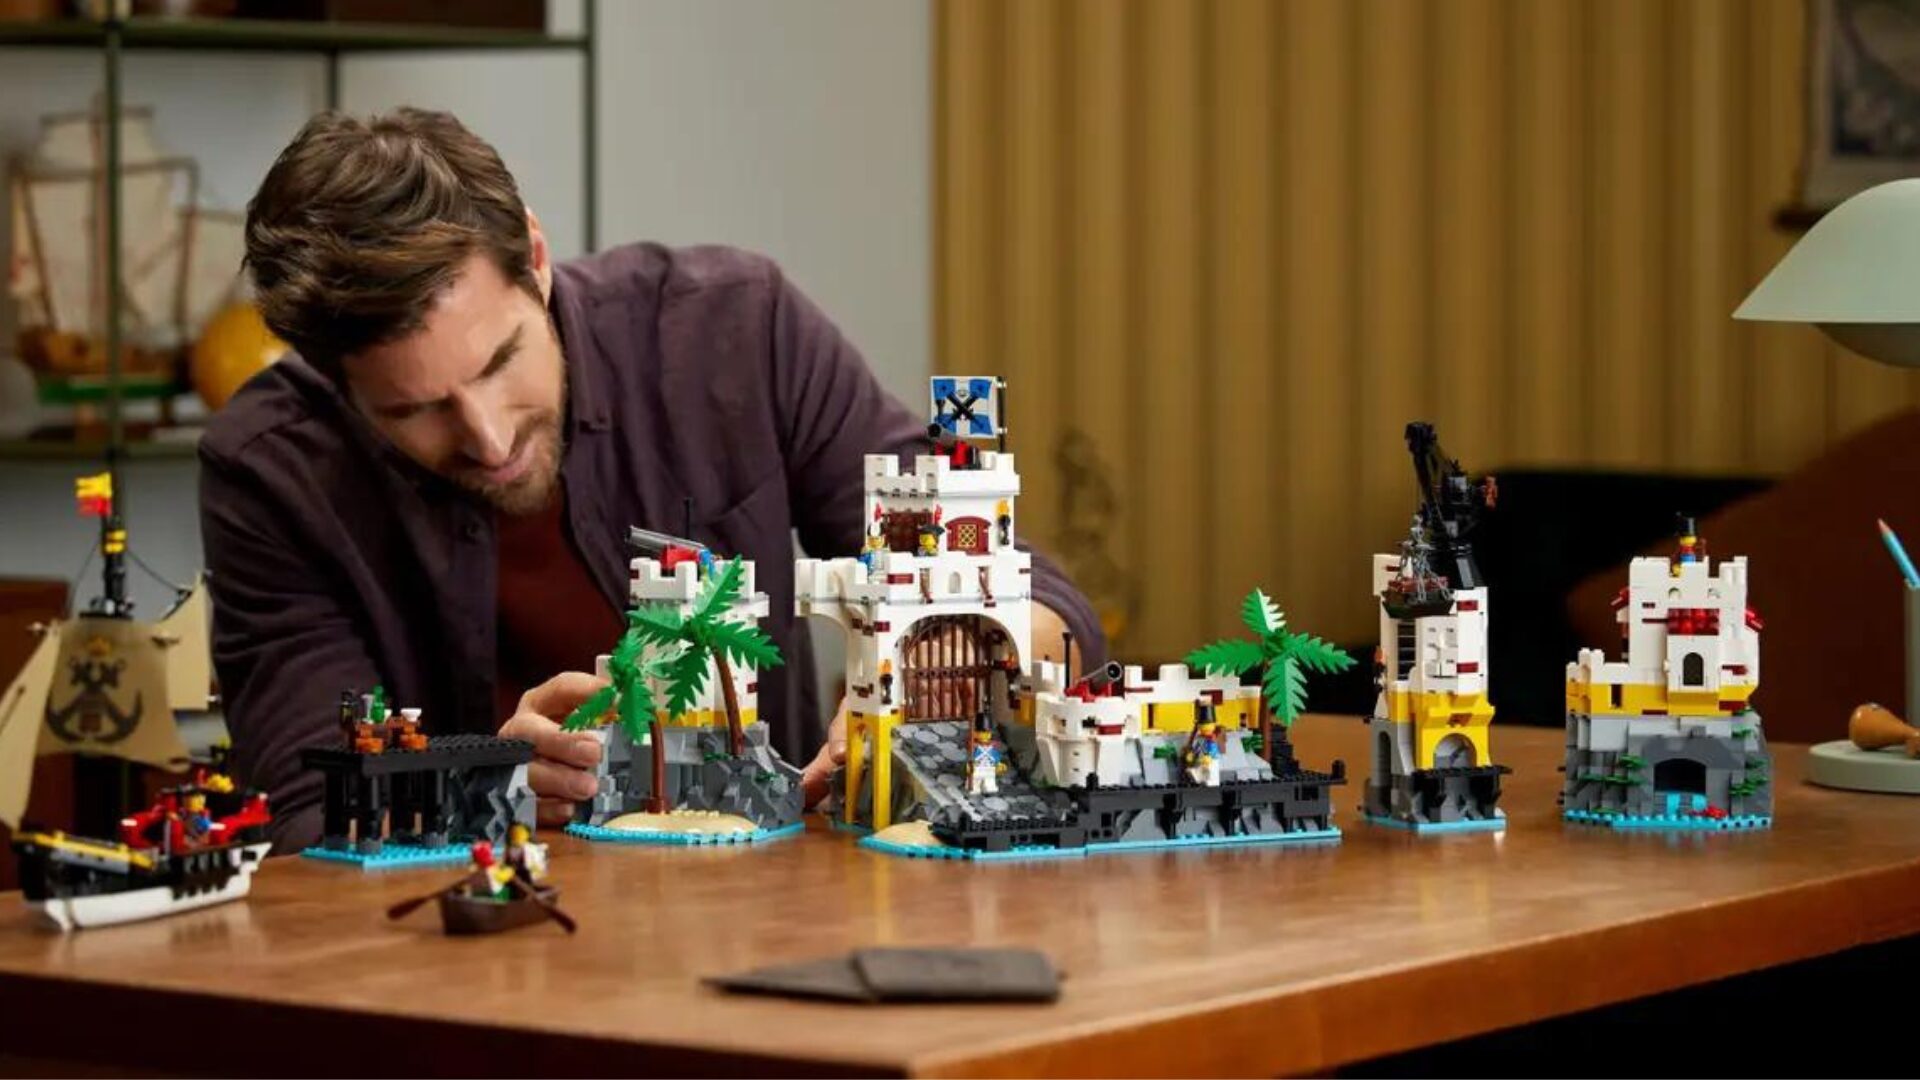 Soldes : ce superbe LEGO en promotion fait sensation, surtout à ce